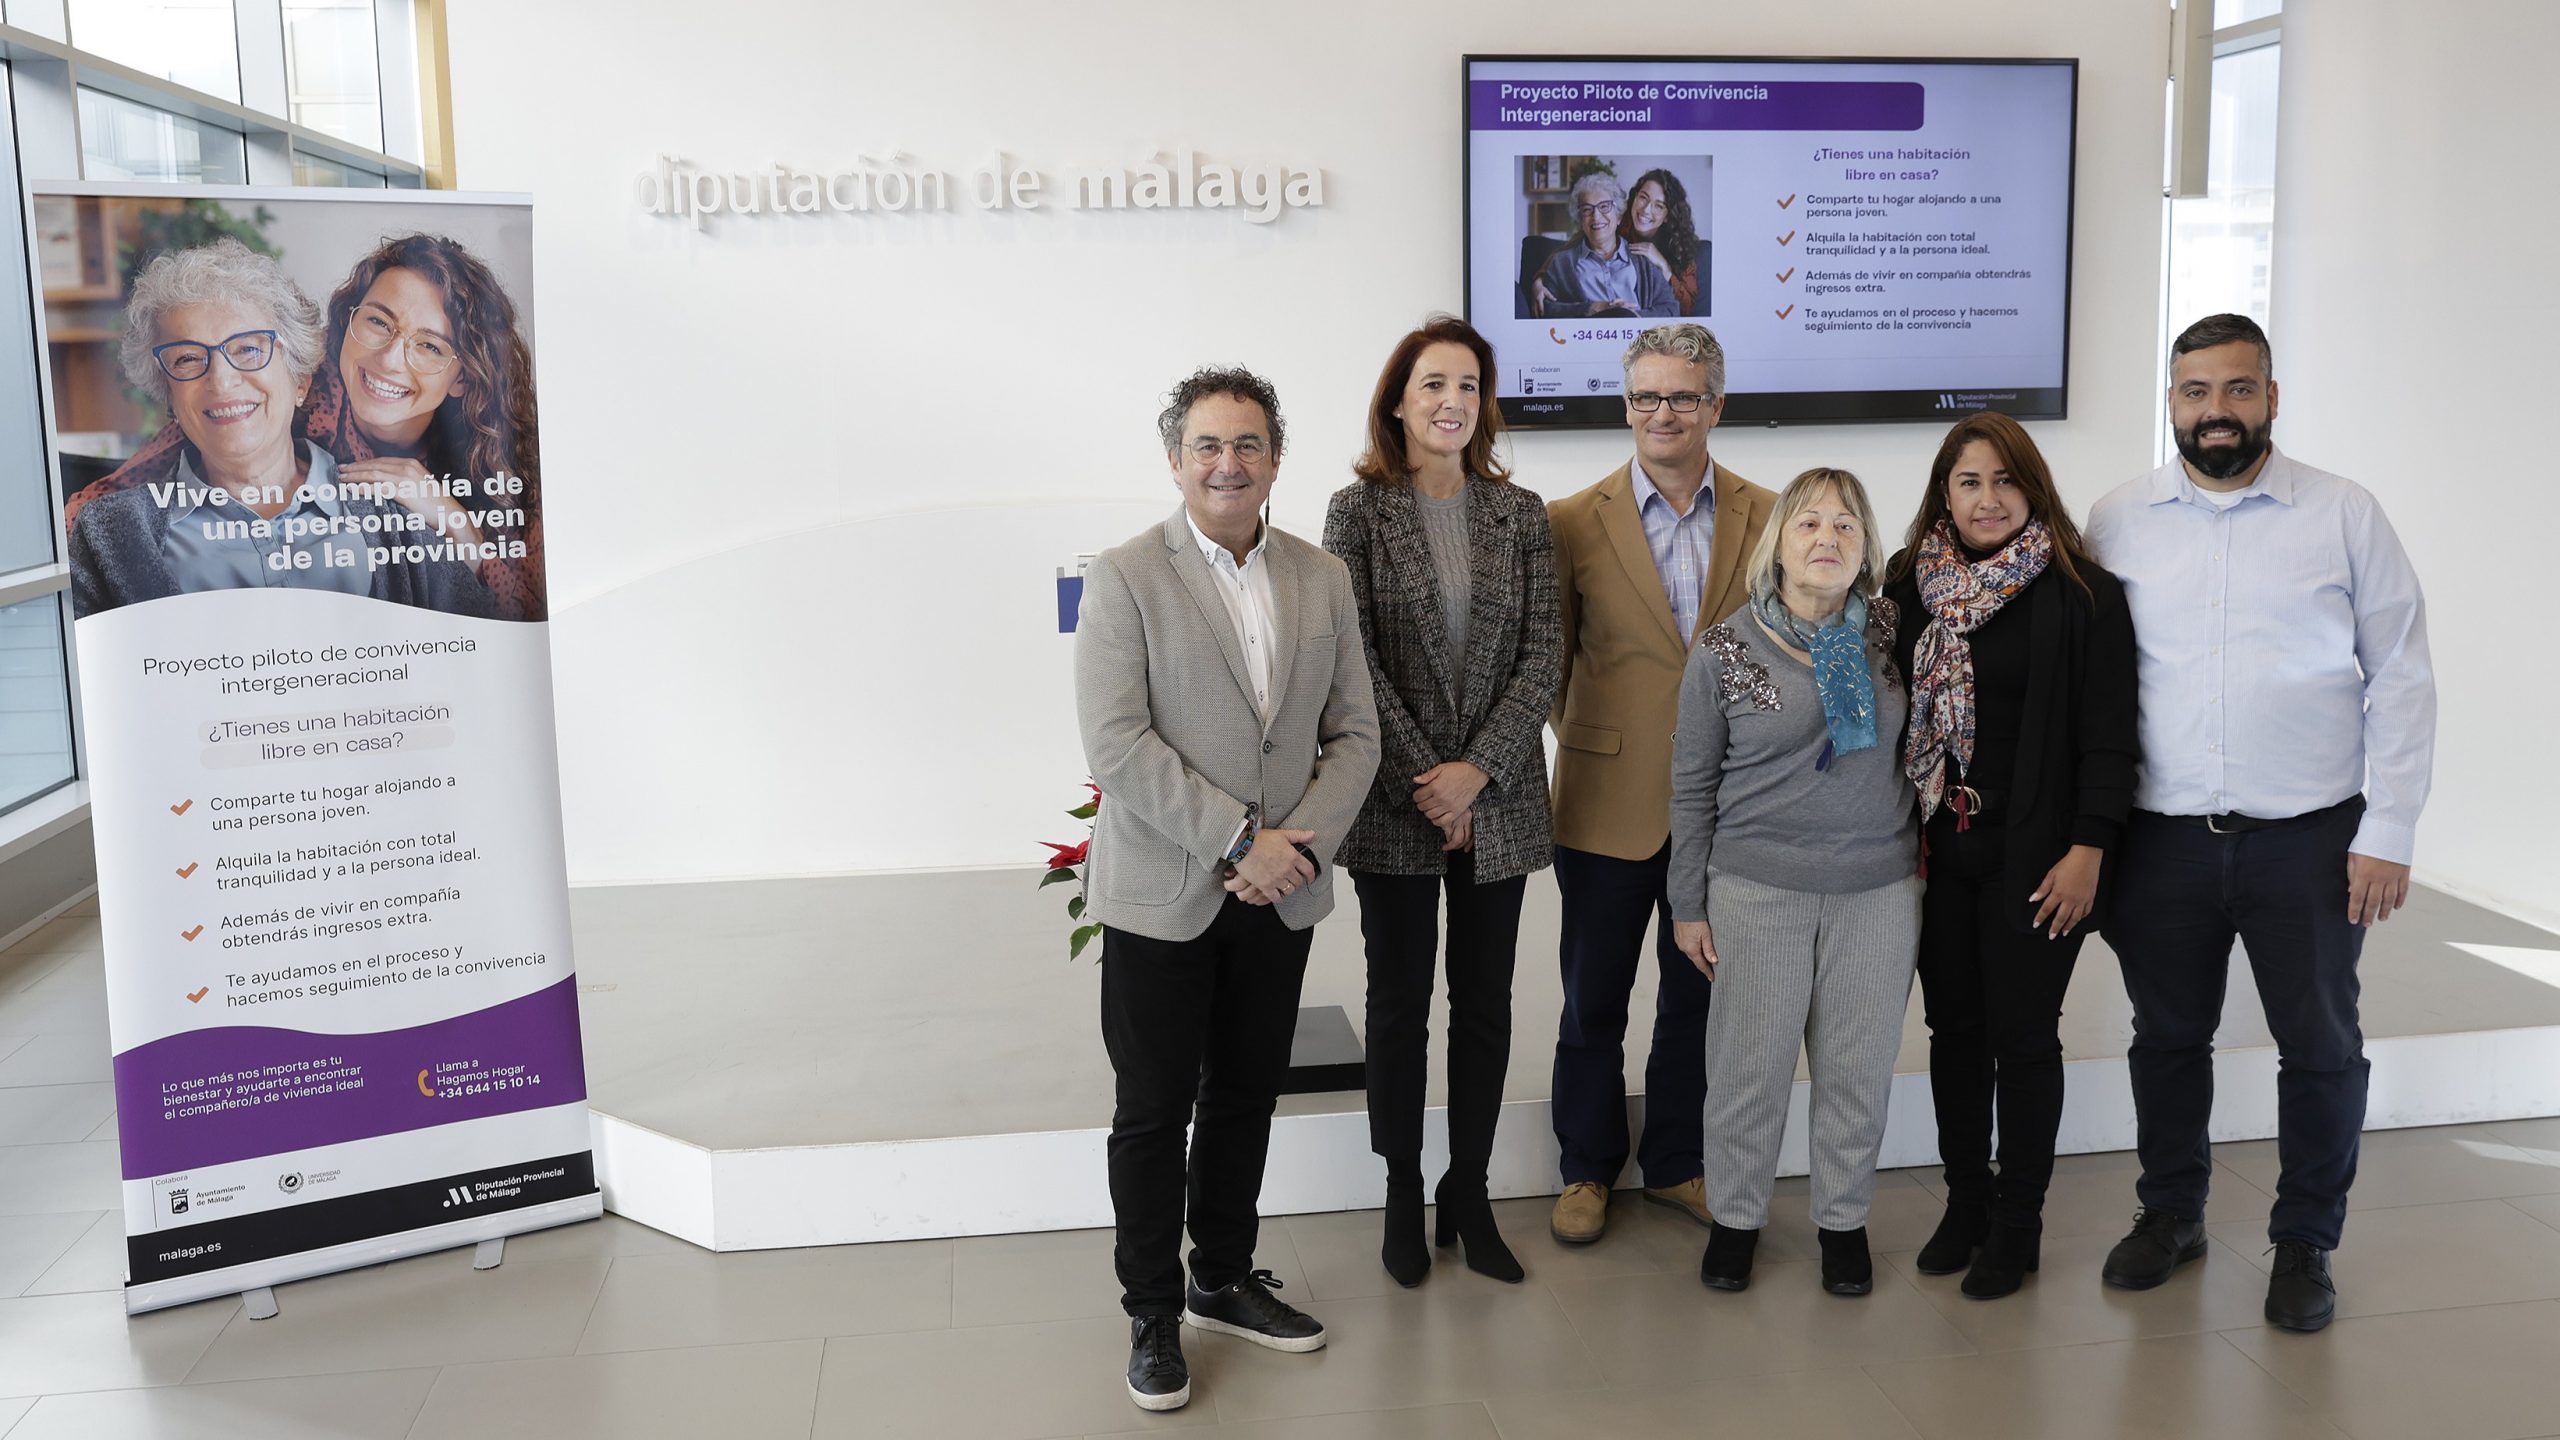 Presentación de un proyecto de convivencia intergeneracional de Hagamos Hogar en la Diputación de Málaga